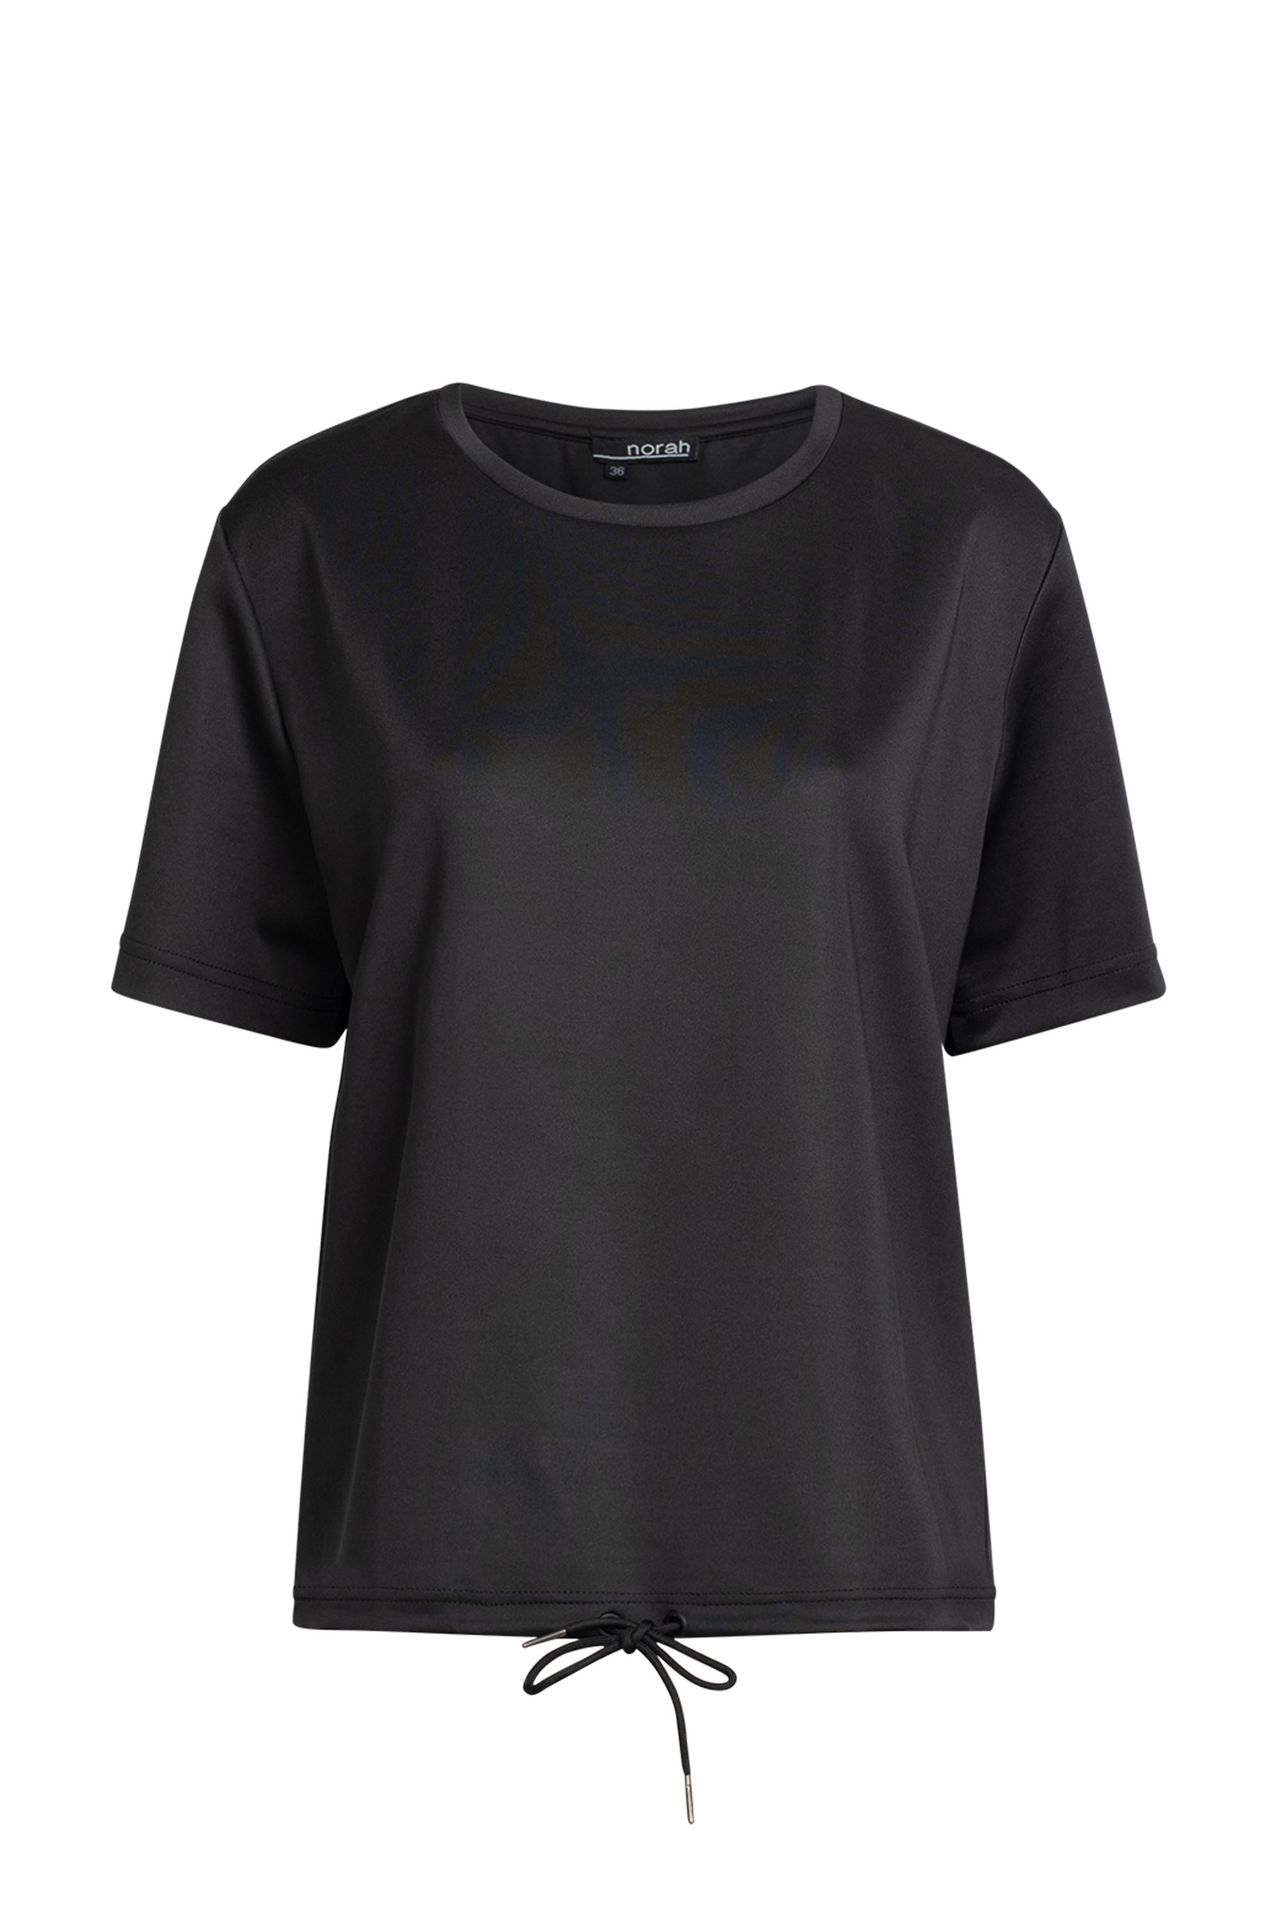 Norah Shirt - Activewear black 211632-001-42